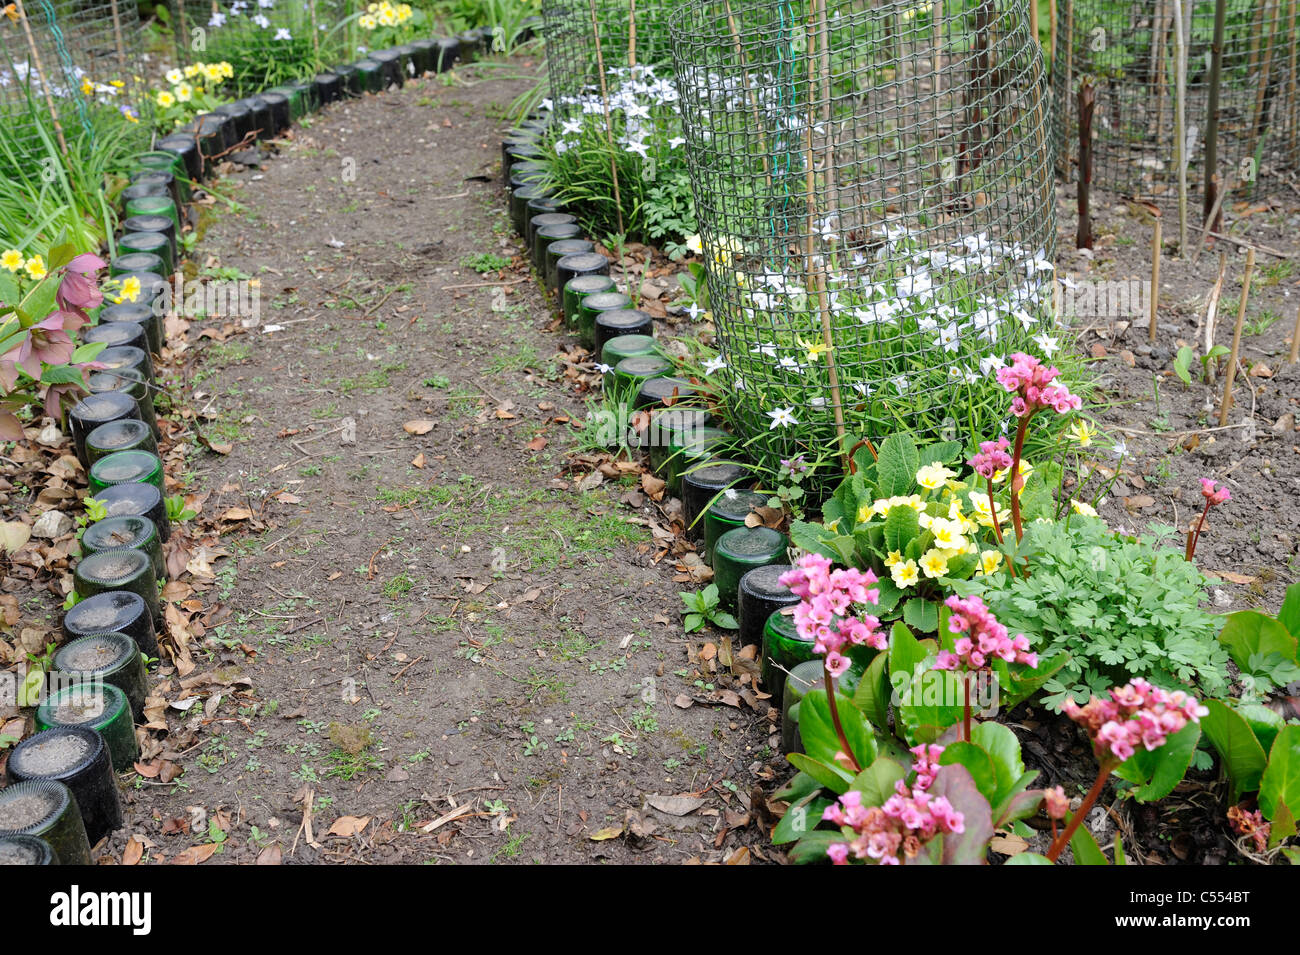 Bouteille de vin bordée Chemin de jardin au printemps avec des primevères et fleurs de printemps, Norfolk, Angleterre, avril Banque D'Images